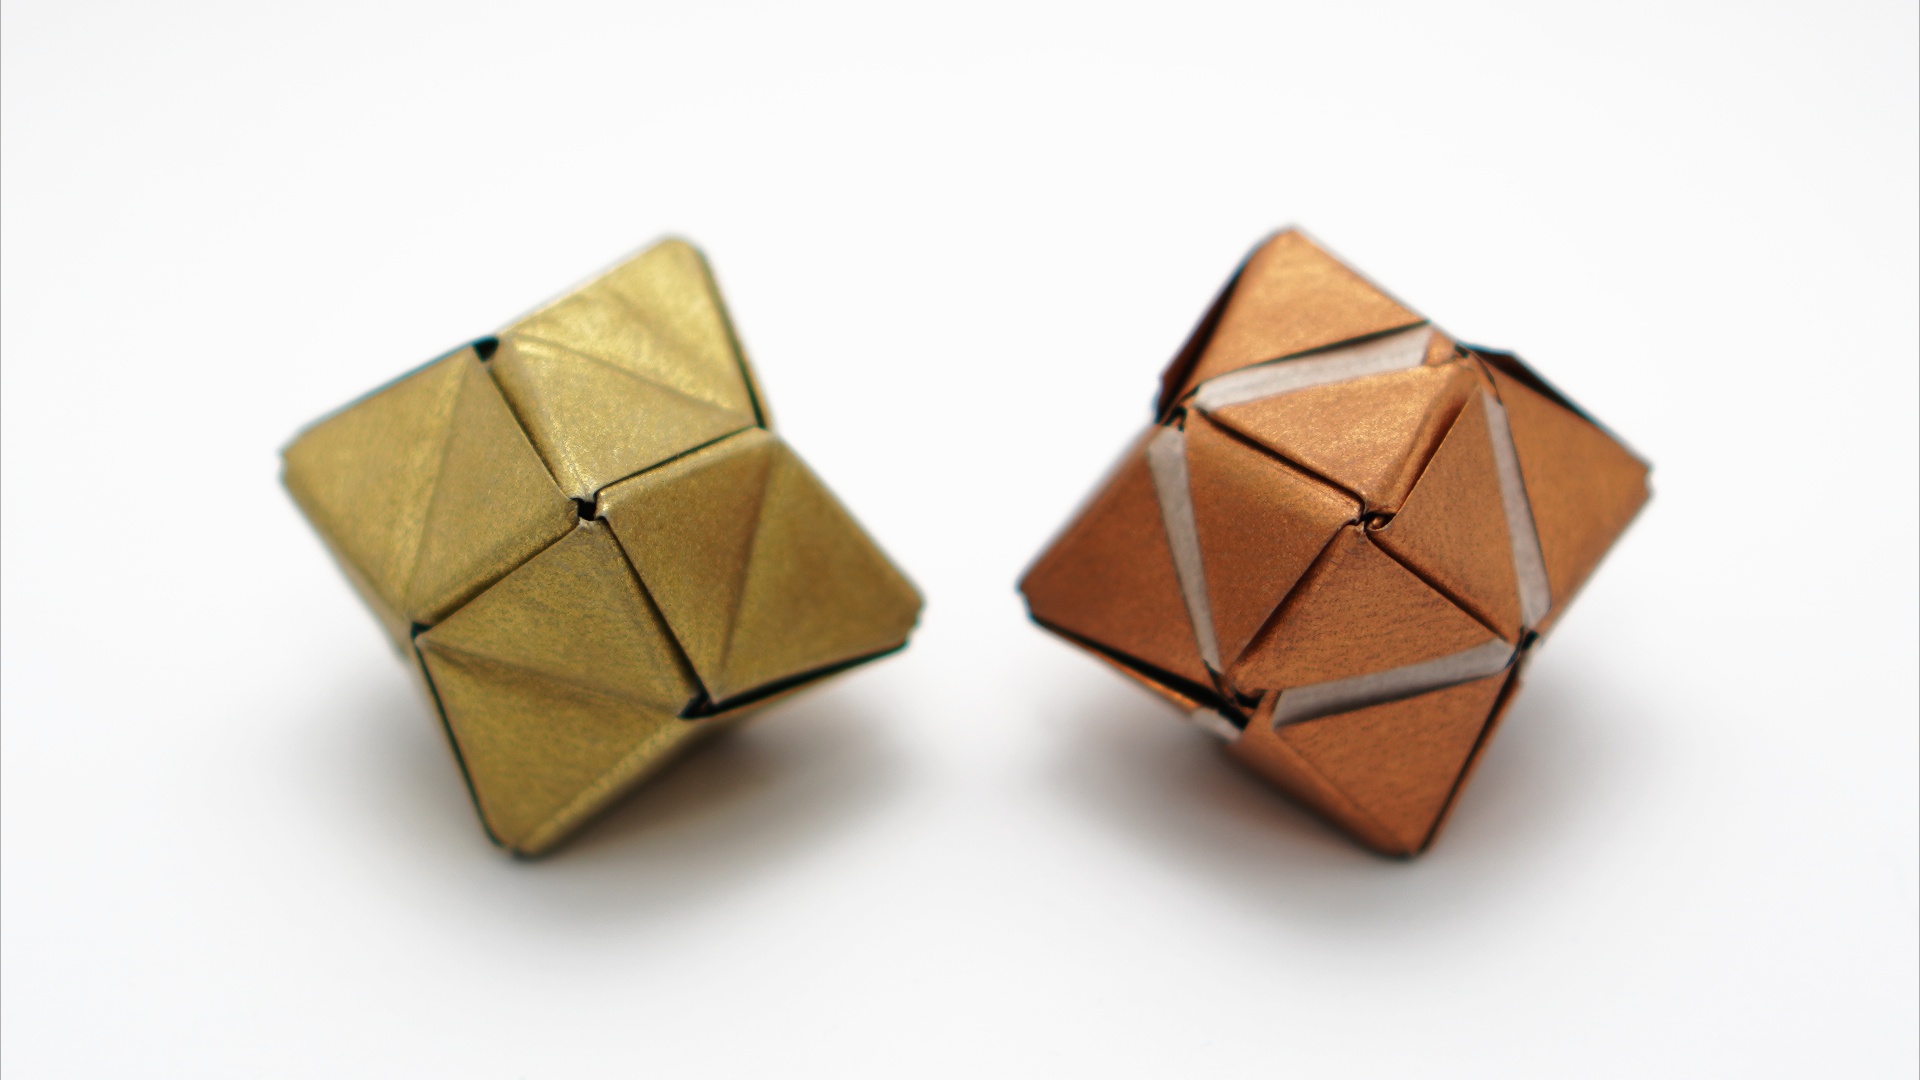 Origami Tetrakis Hexahedro by Jo Nakashiman